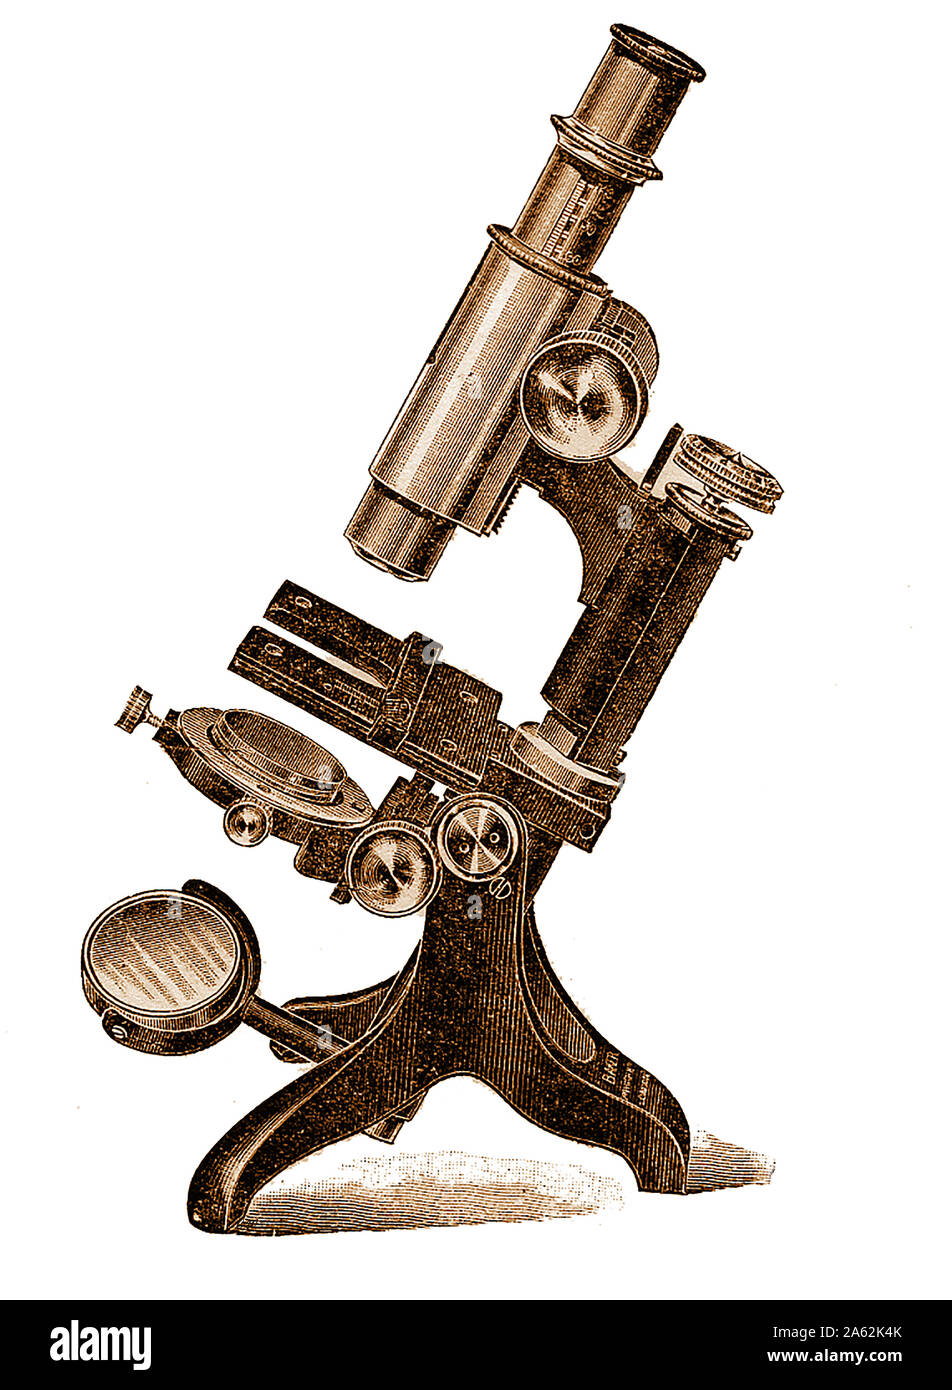 La histología microscopio del siglo xix - Equipo - Estudiante avanzado de Baker' microscopio Foto de stock